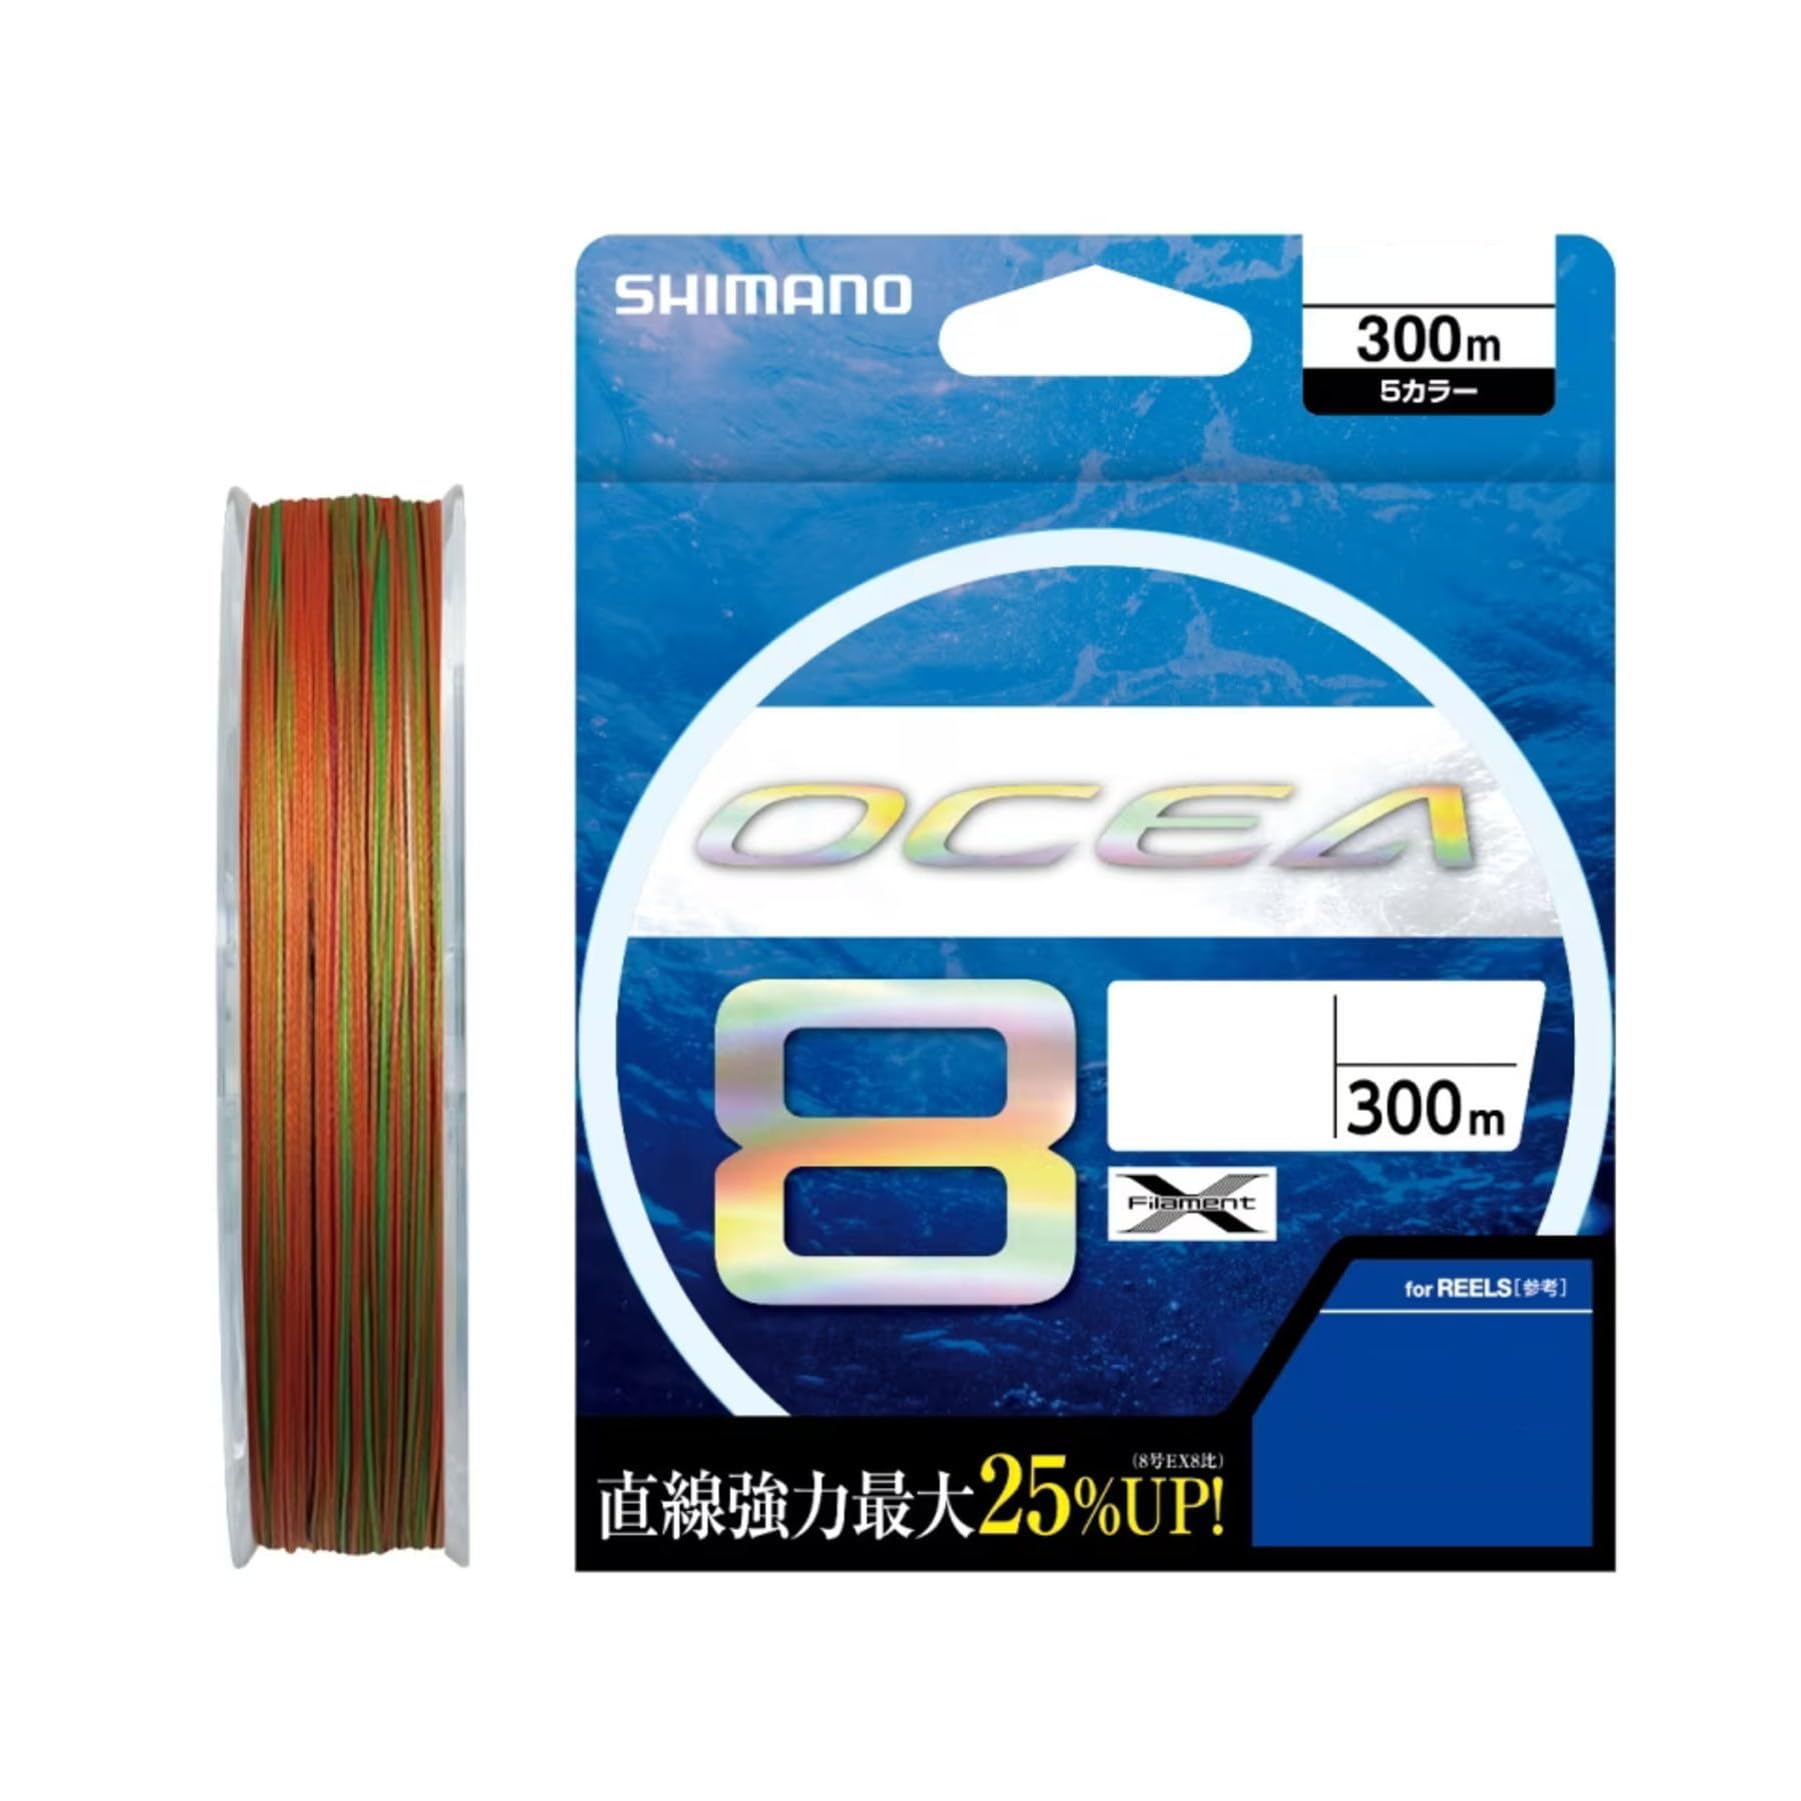 シマノ(SHIMANO) ライン オシア8 300m 3.0号 5カラー LD-A71S 釣り糸 ライン 3号